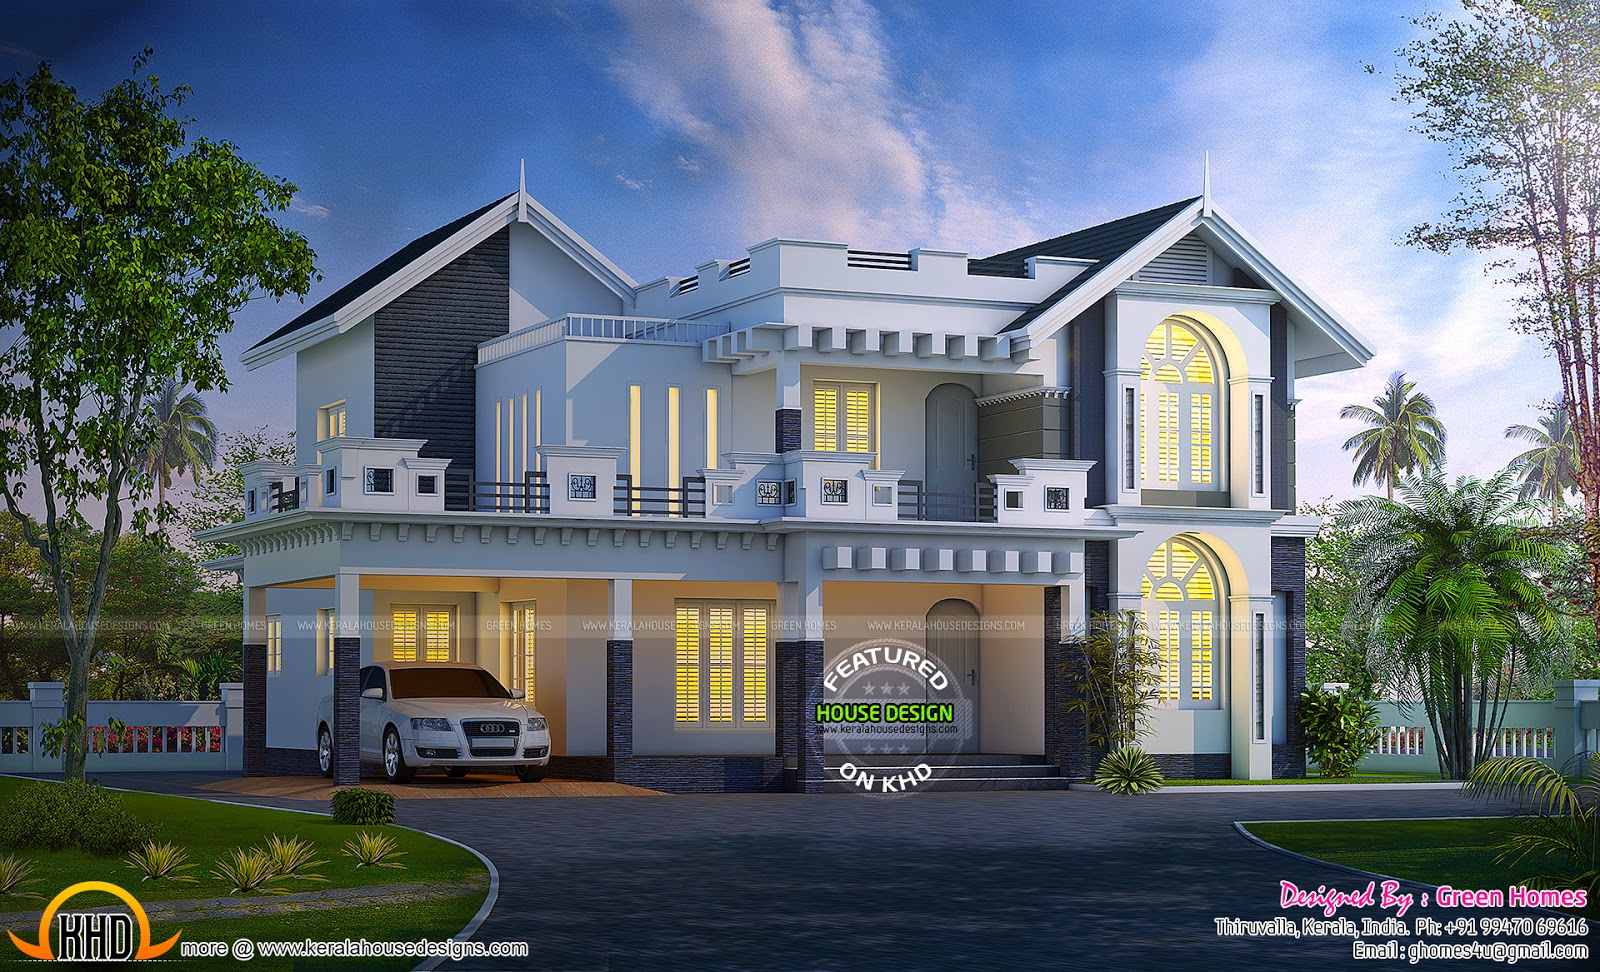  New  Kerala  house  plans  for June 2019 keralahousedesigns